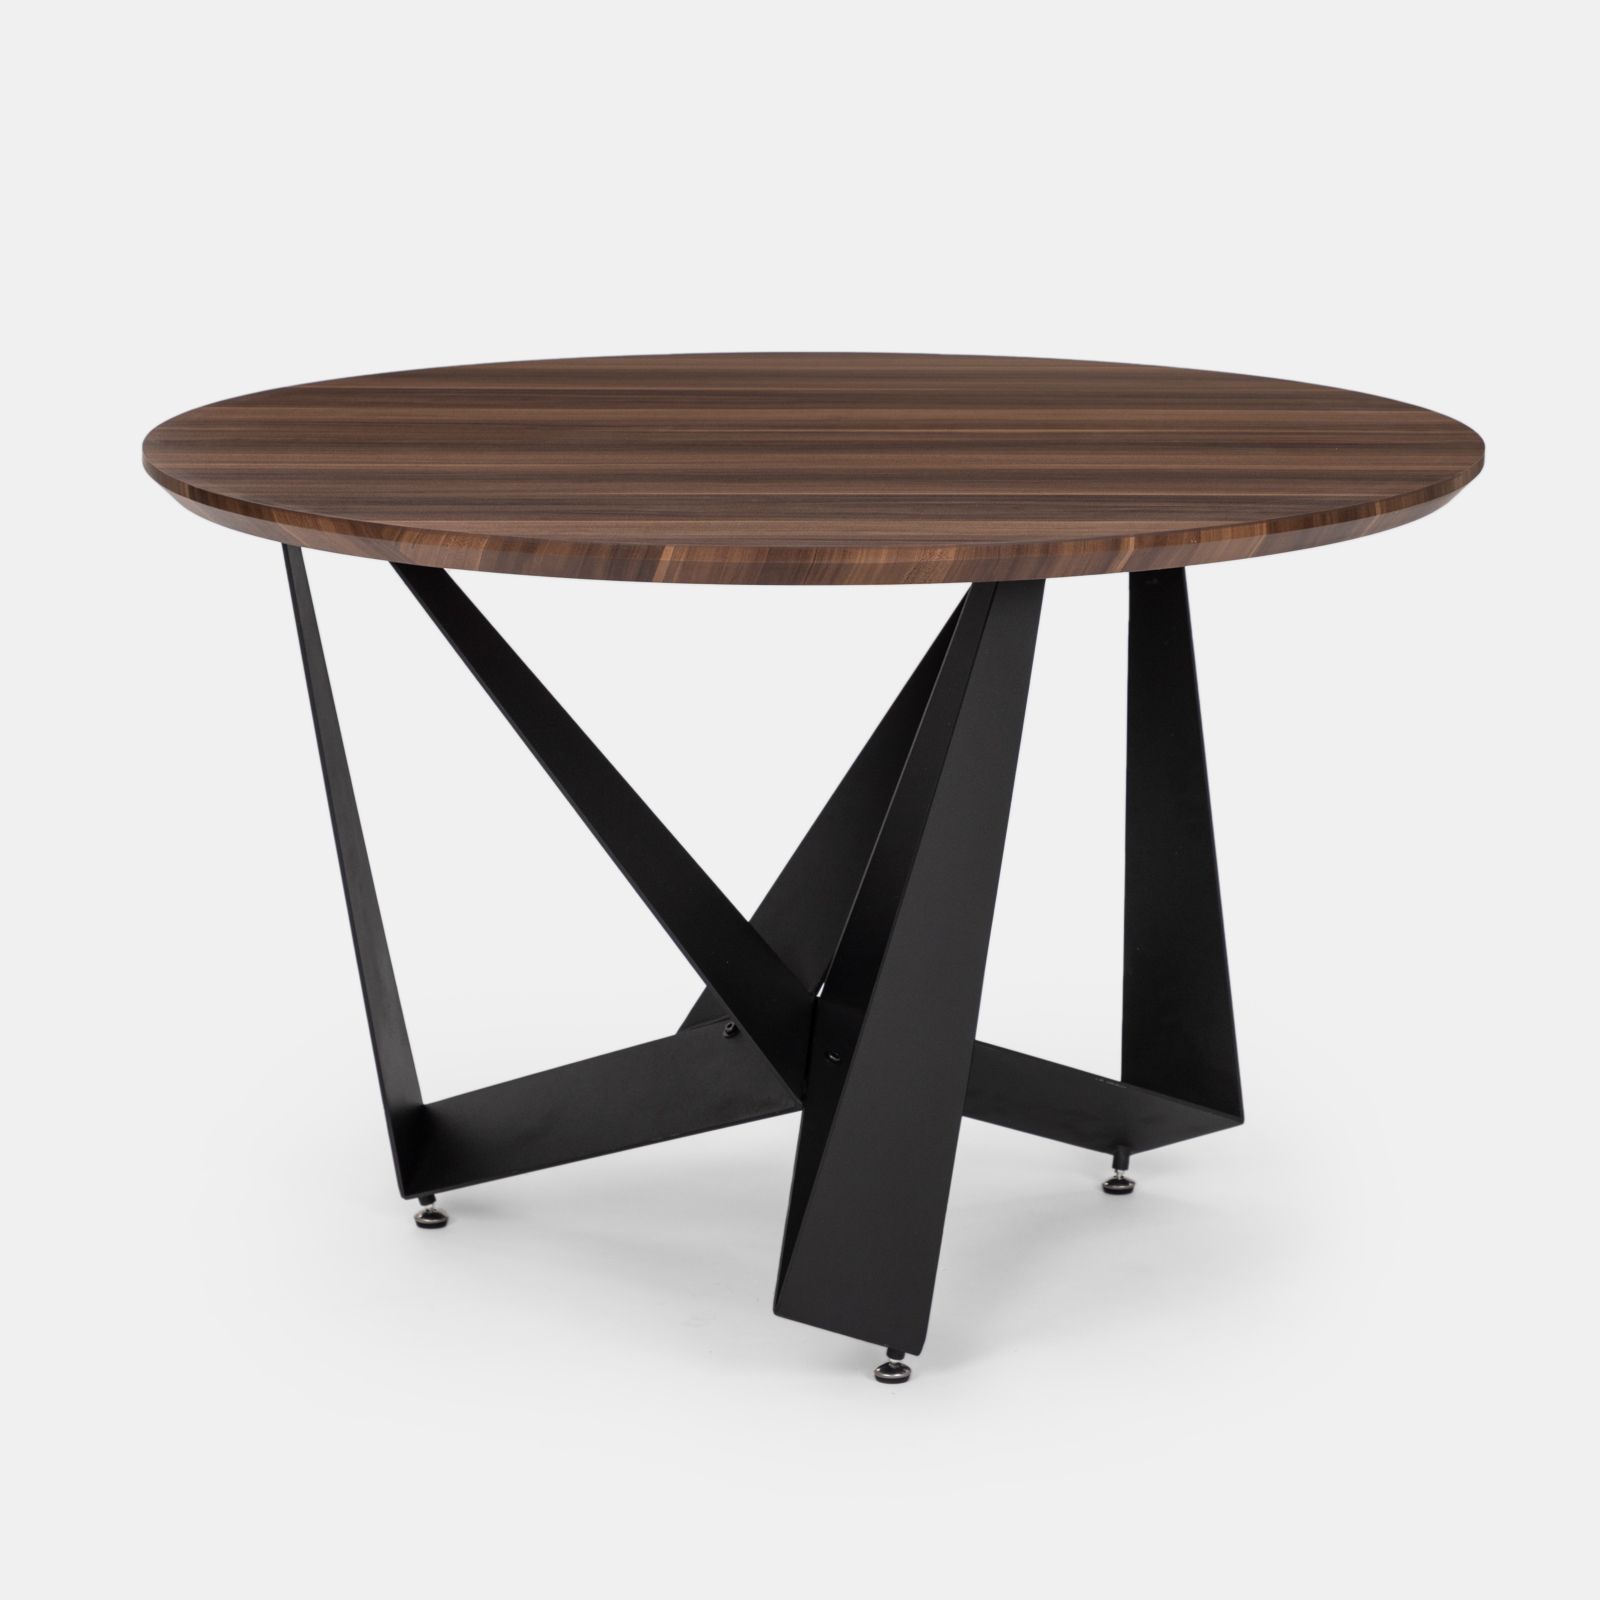 Tavolo 120x70 cm in legno noce e gambe nere - Glimner